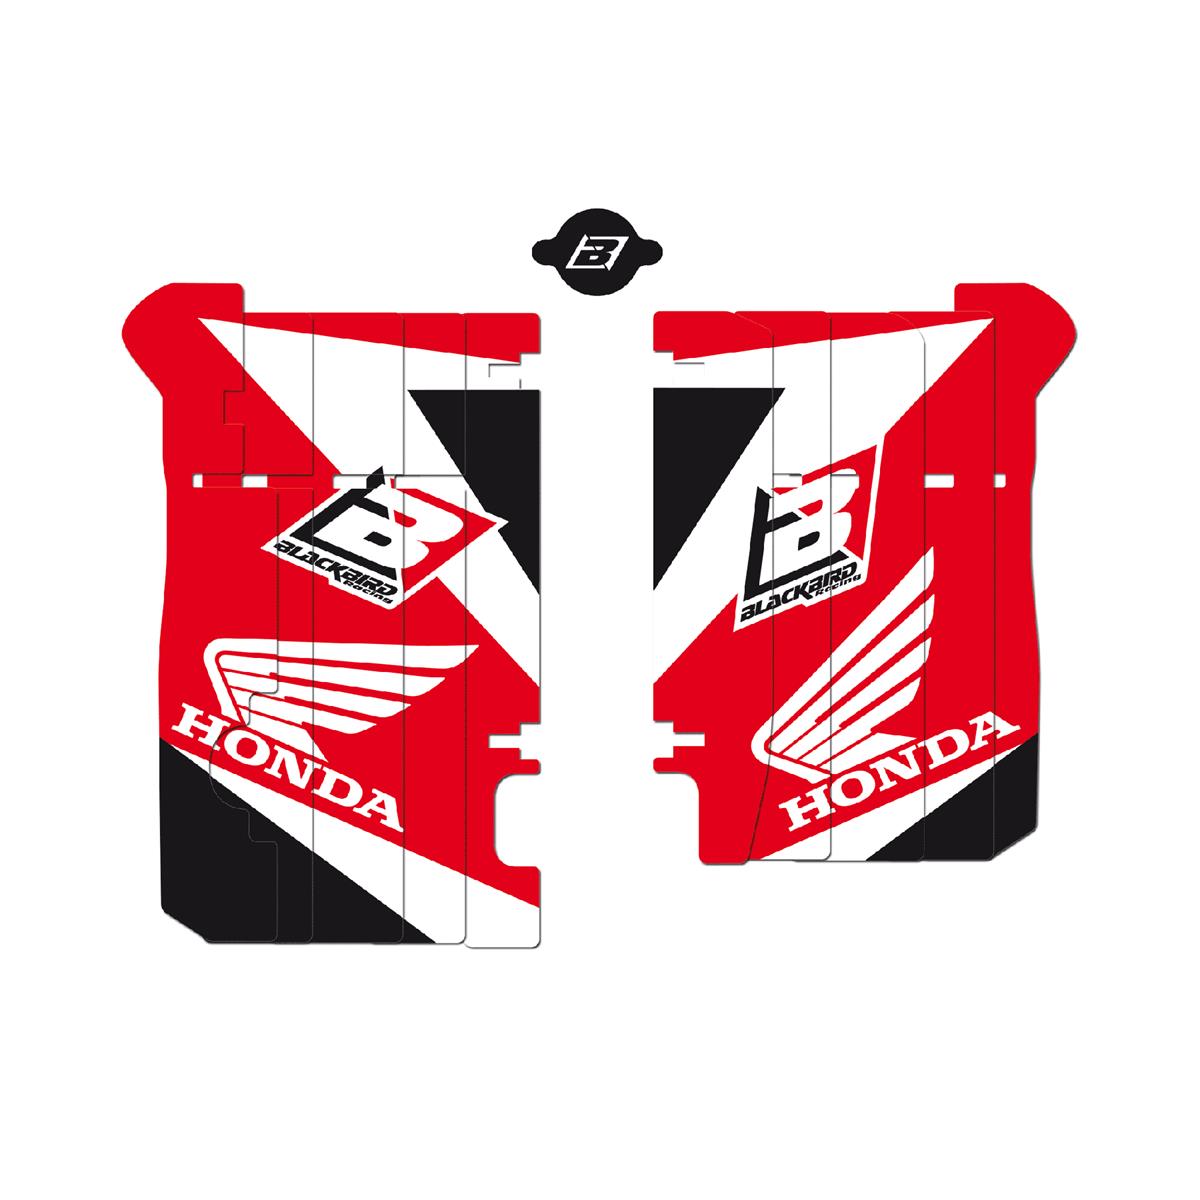 Blackbird Racing Autocollants pour Grille de Radiateur Dream 3 Honda CRF 450 13-15, Rouge/Blanc/Noir